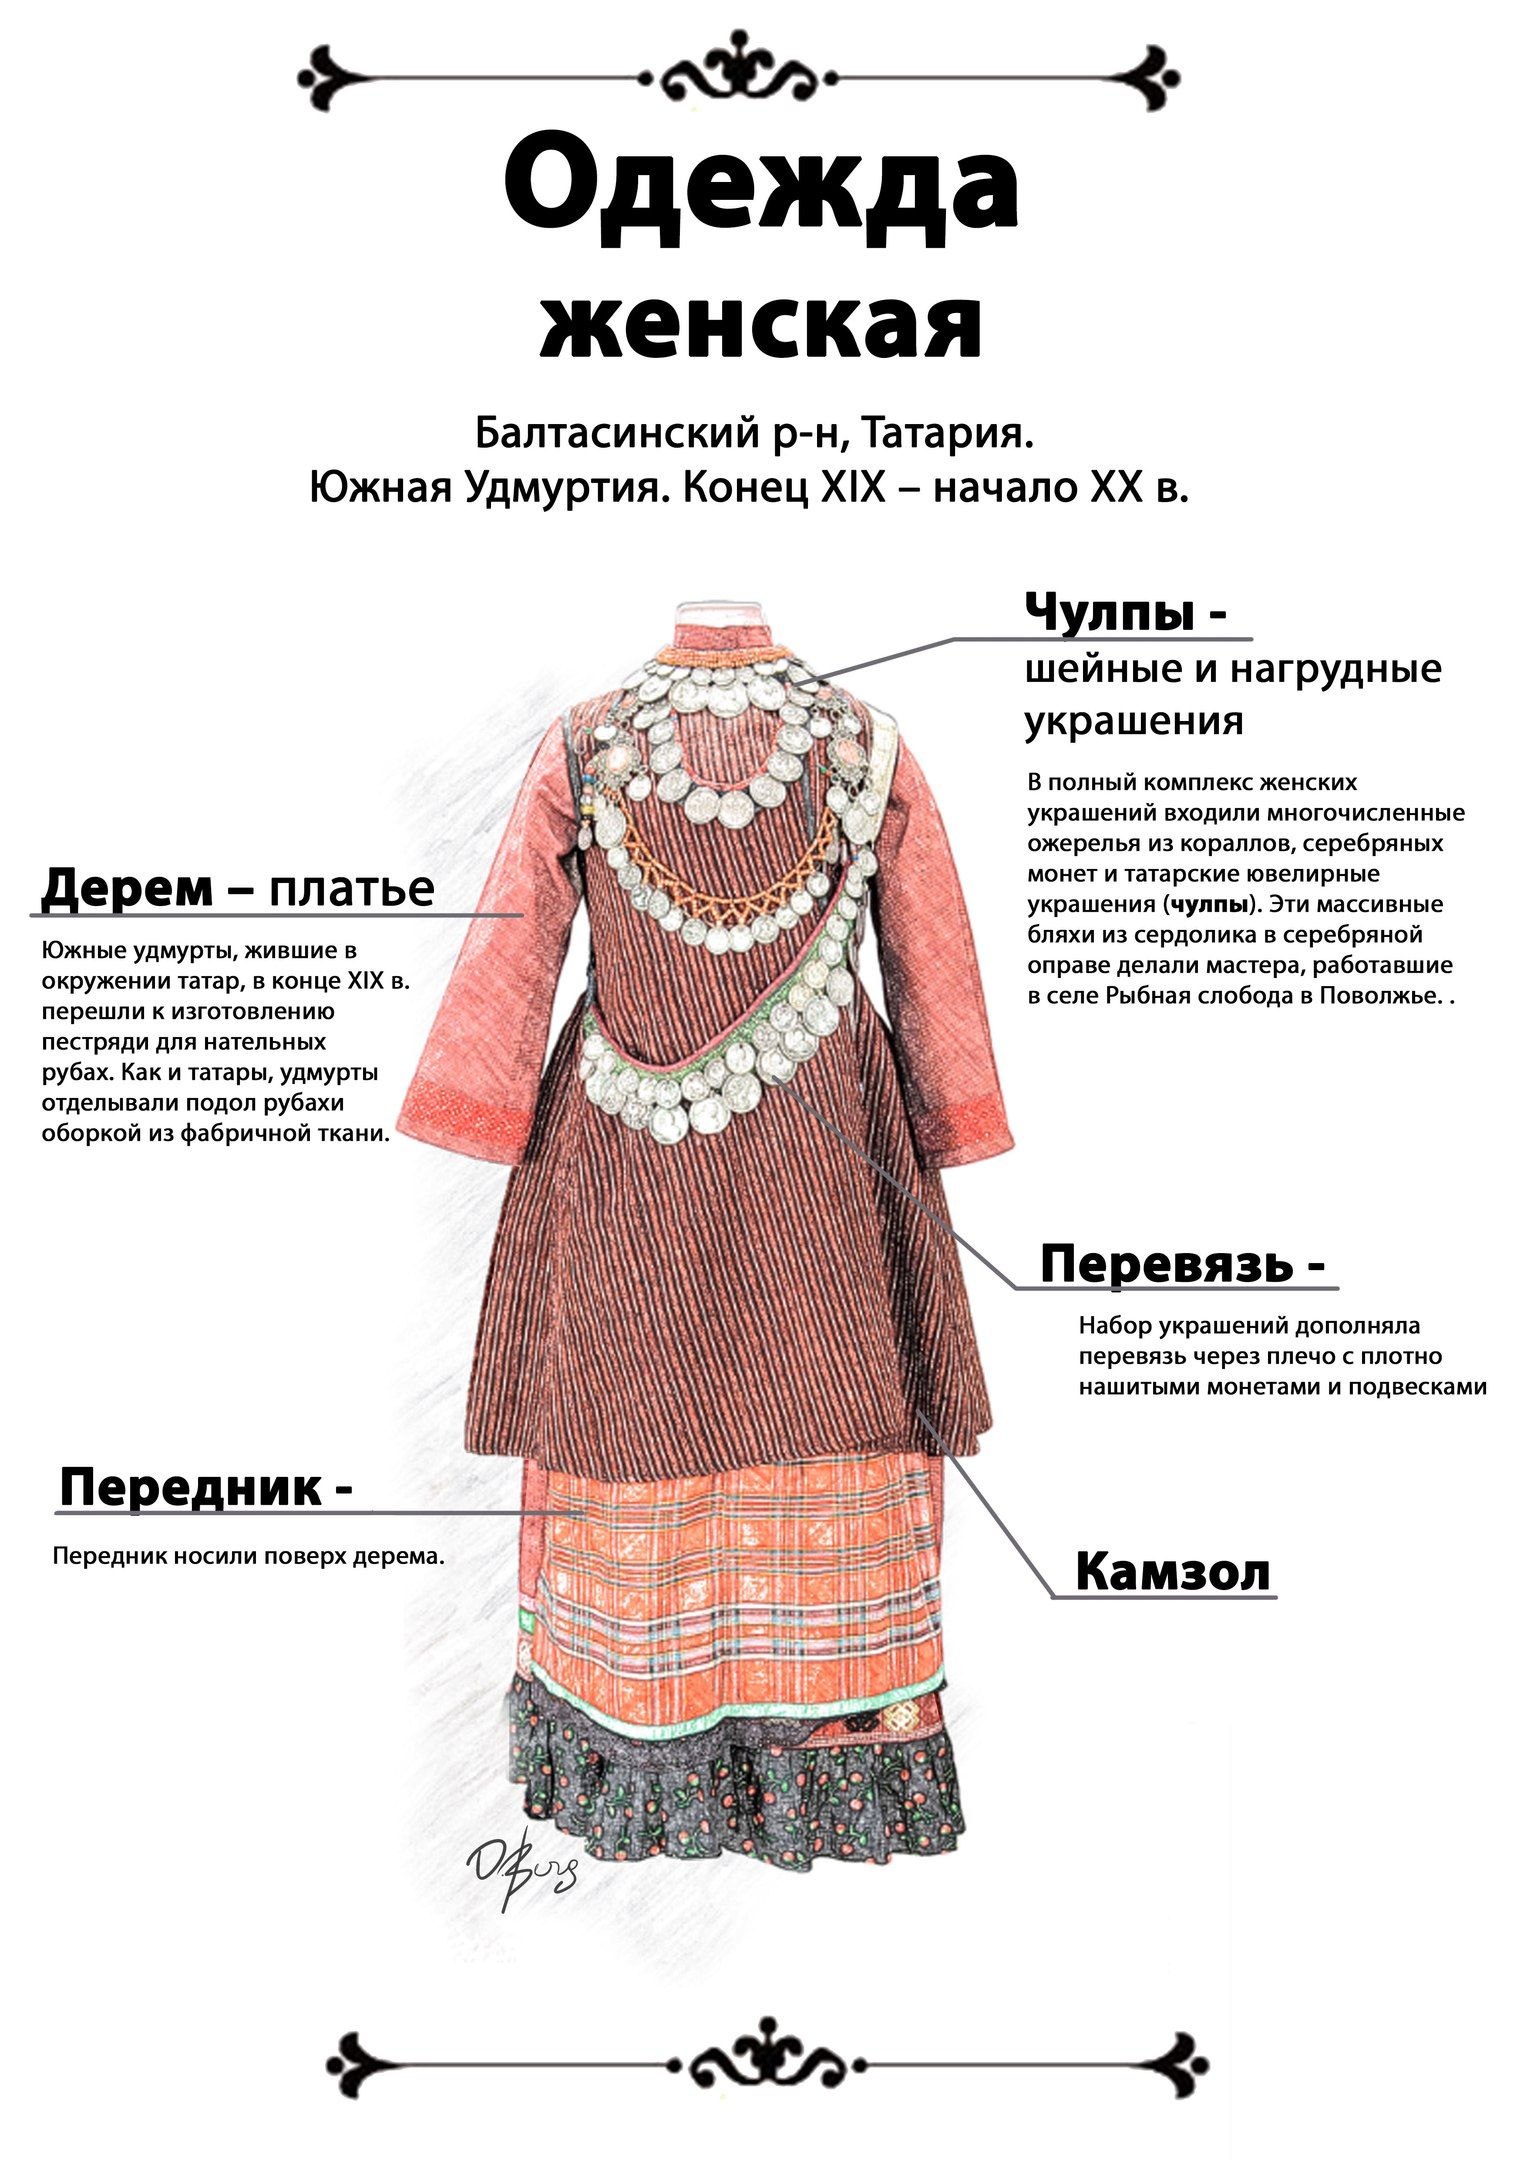 Традиционная одежда удмуртов традиционная одежда удмуртов